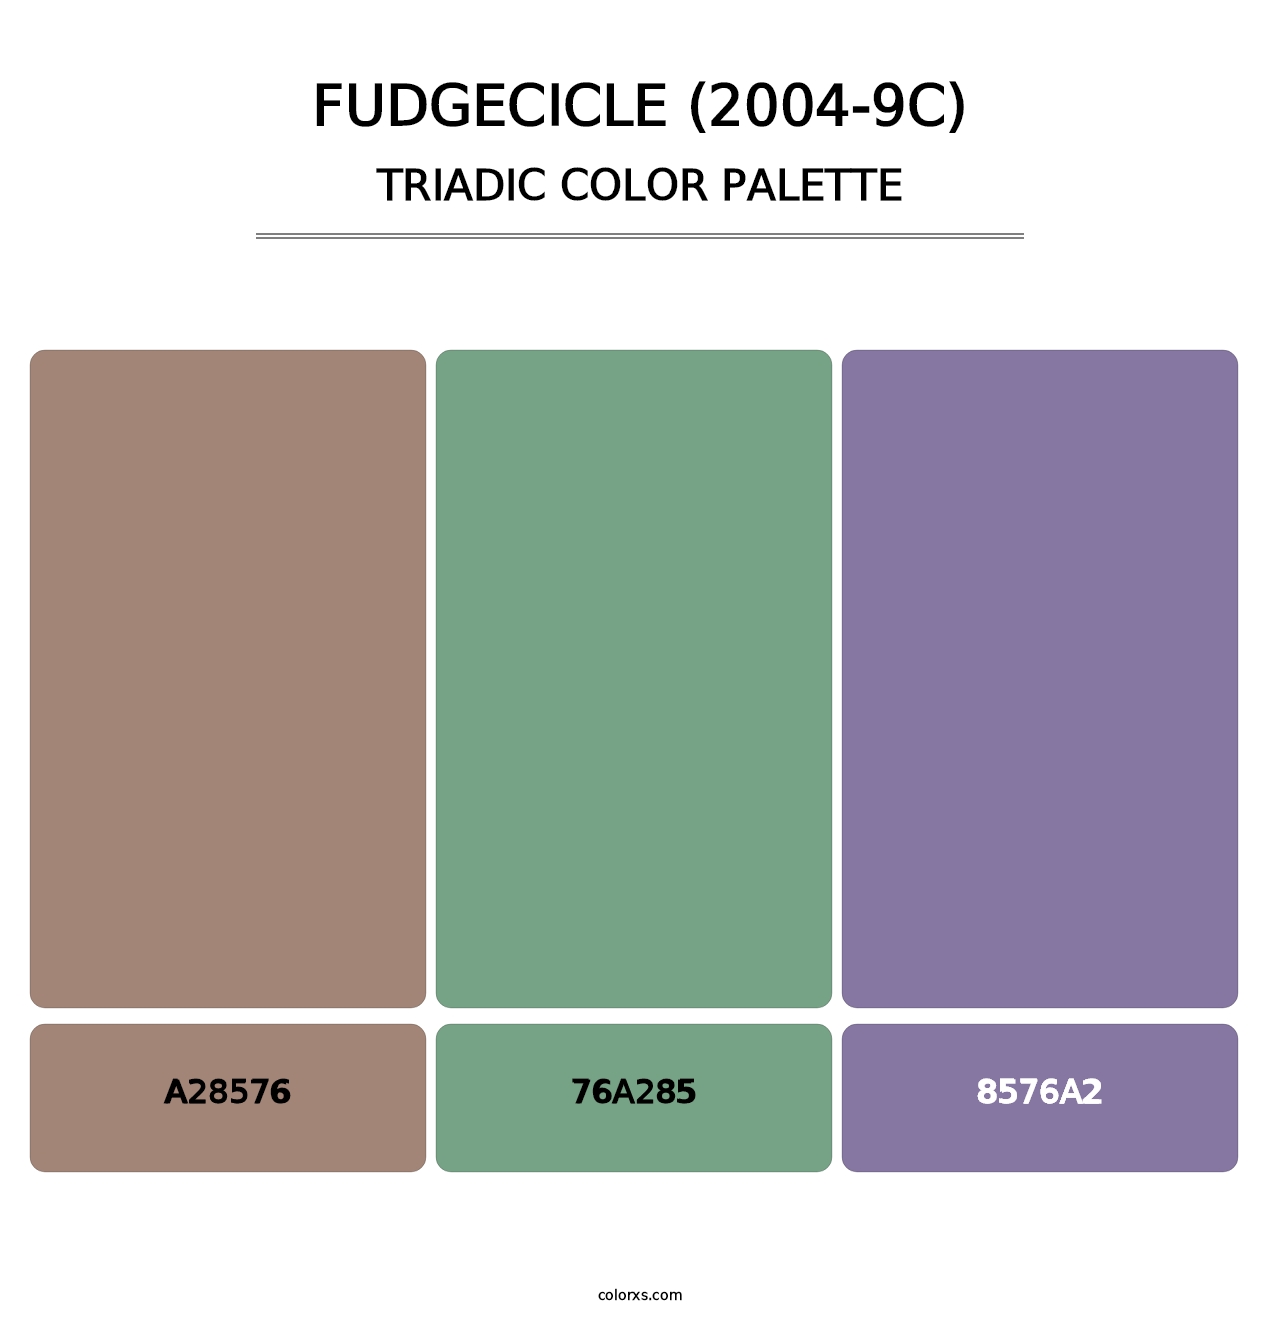 Fudgecicle (2004-9C) - Triadic Color Palette